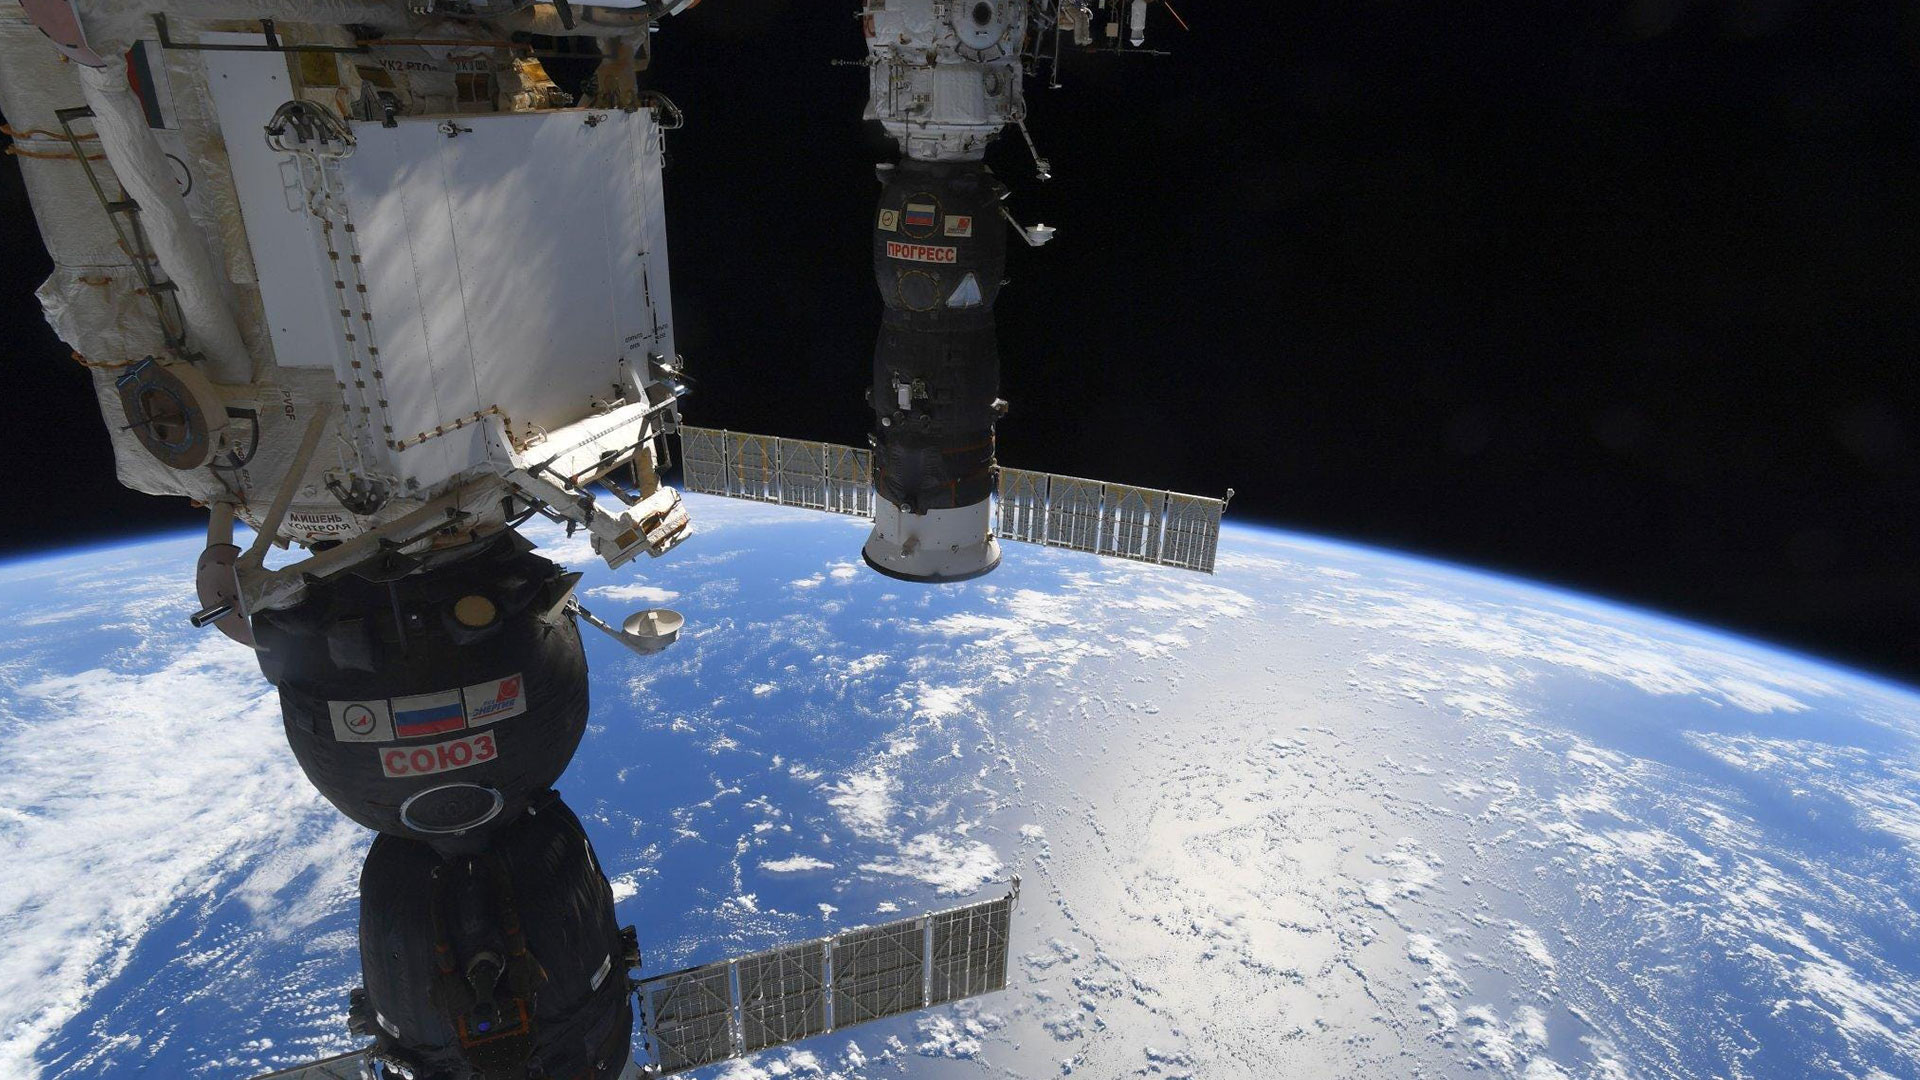 ¿Ves las piernas del astronauta colgando al costado de la estación espacial?